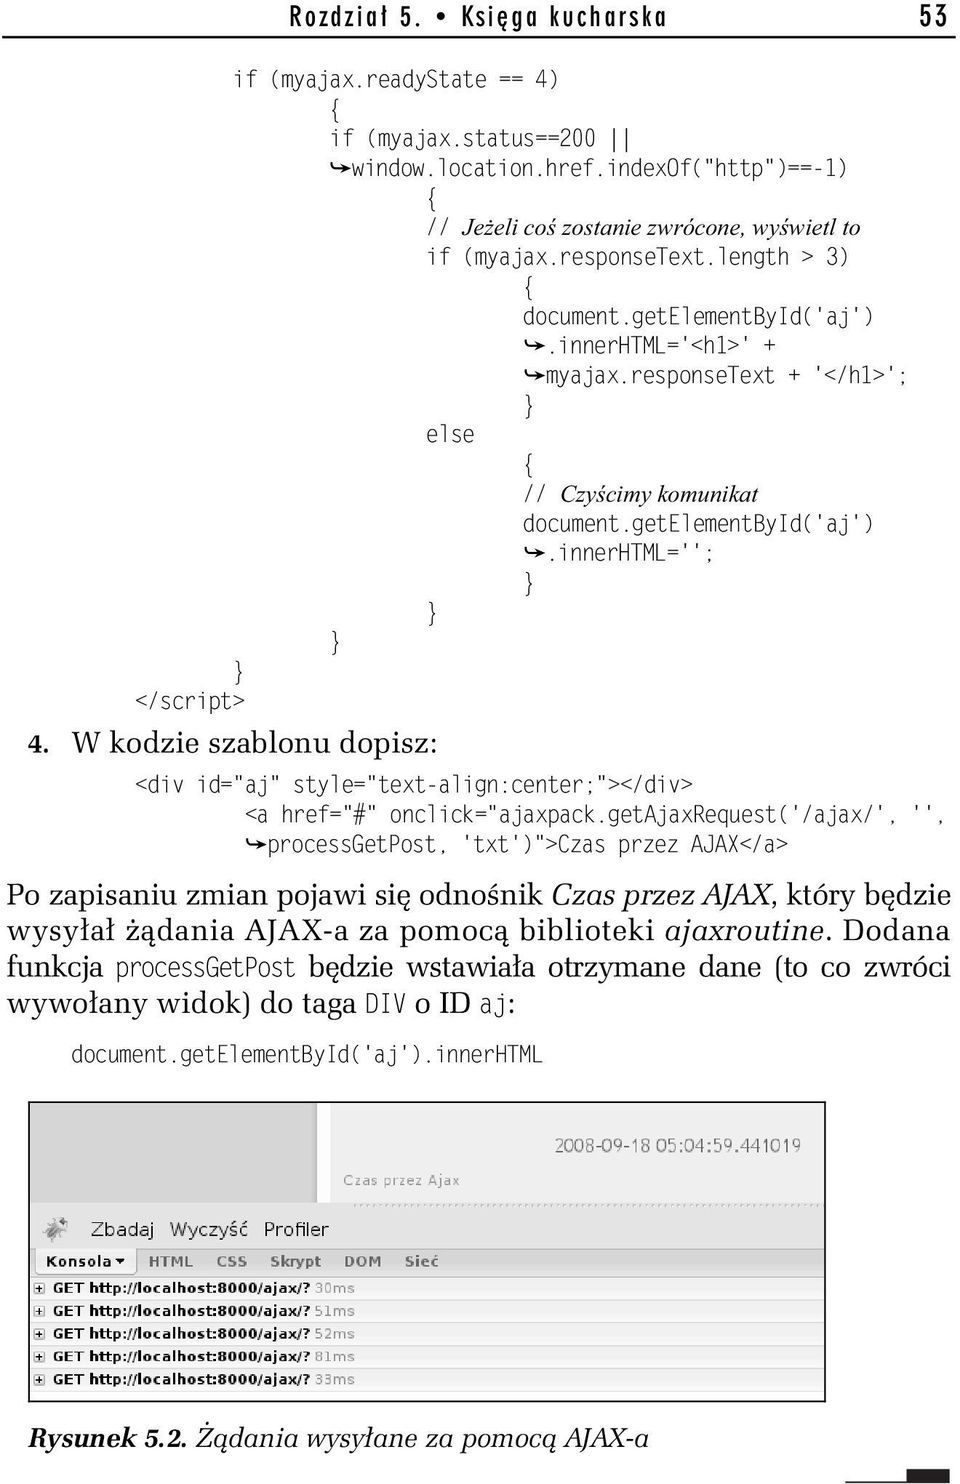 W kodzie szablonu dopisz: <div id="aj" style="text-align:center;"></div> <a href="#" onclick="ajaxpack.